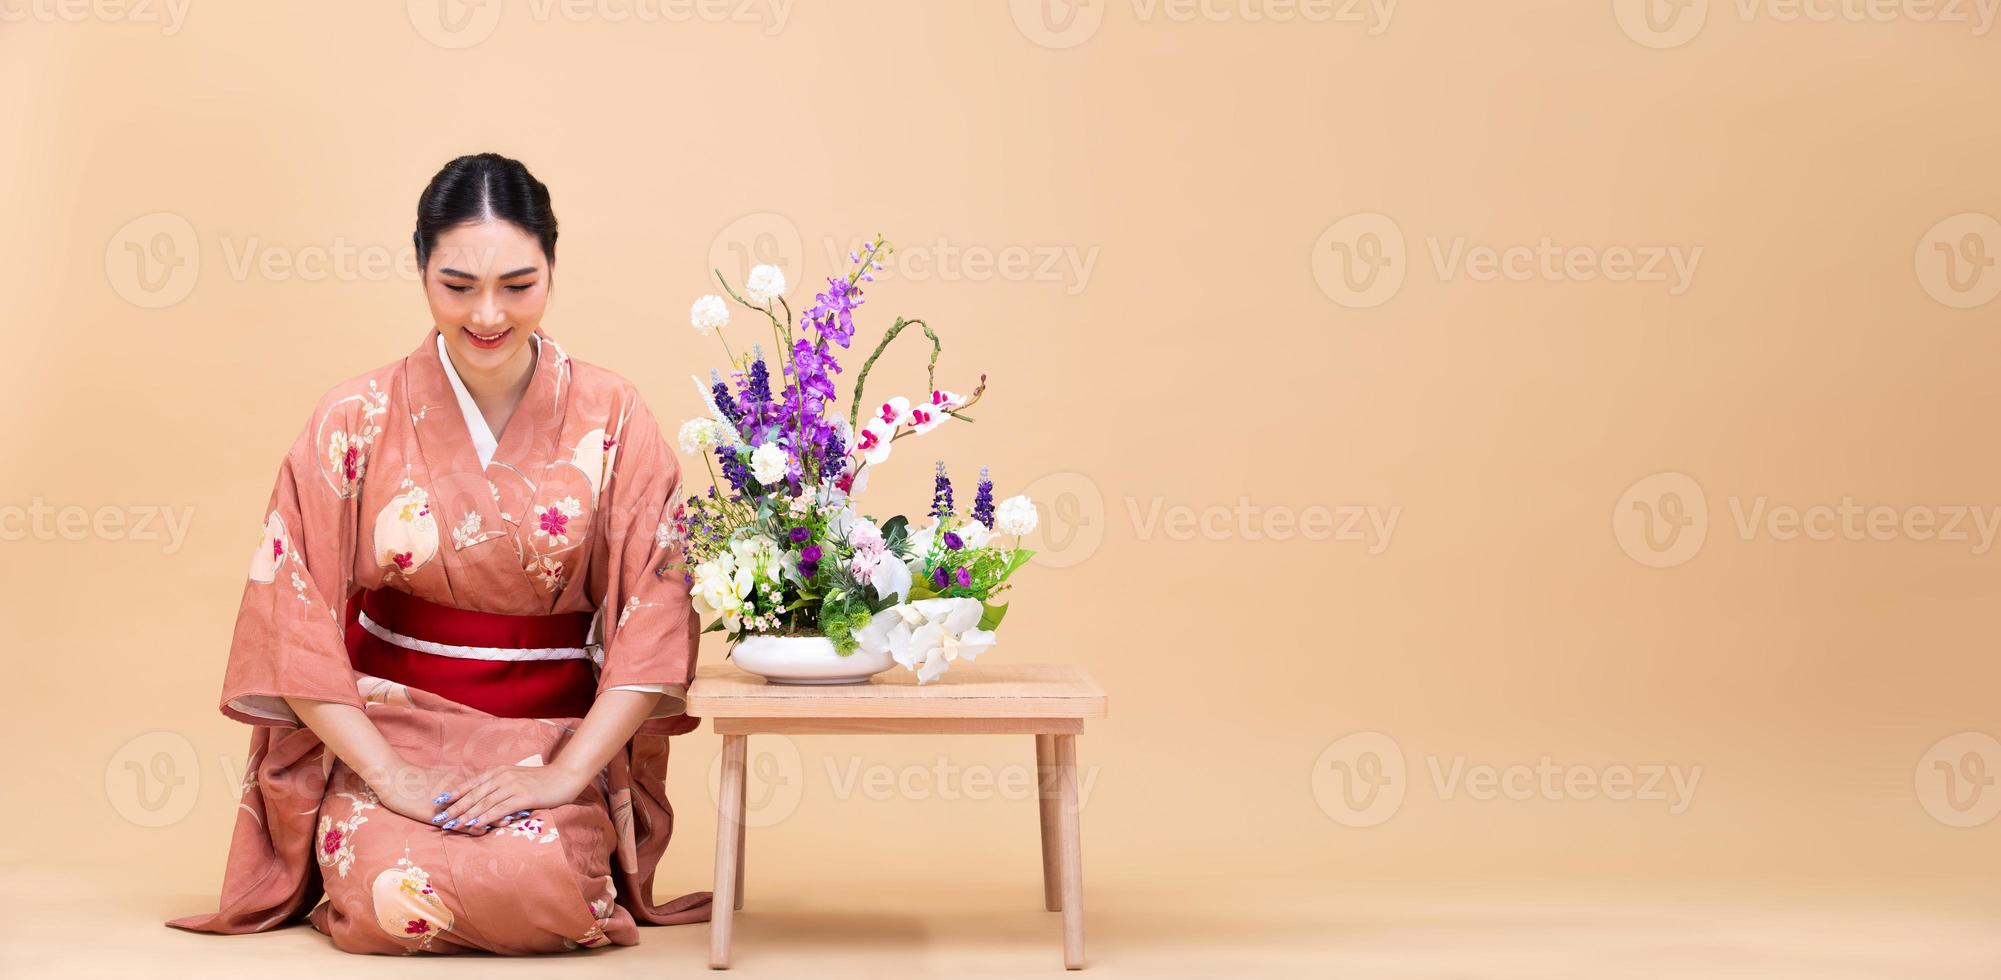 joven mujer japonesa asiática de 20 años usa kimono tradicional, hace arreglos florales ikebana foto